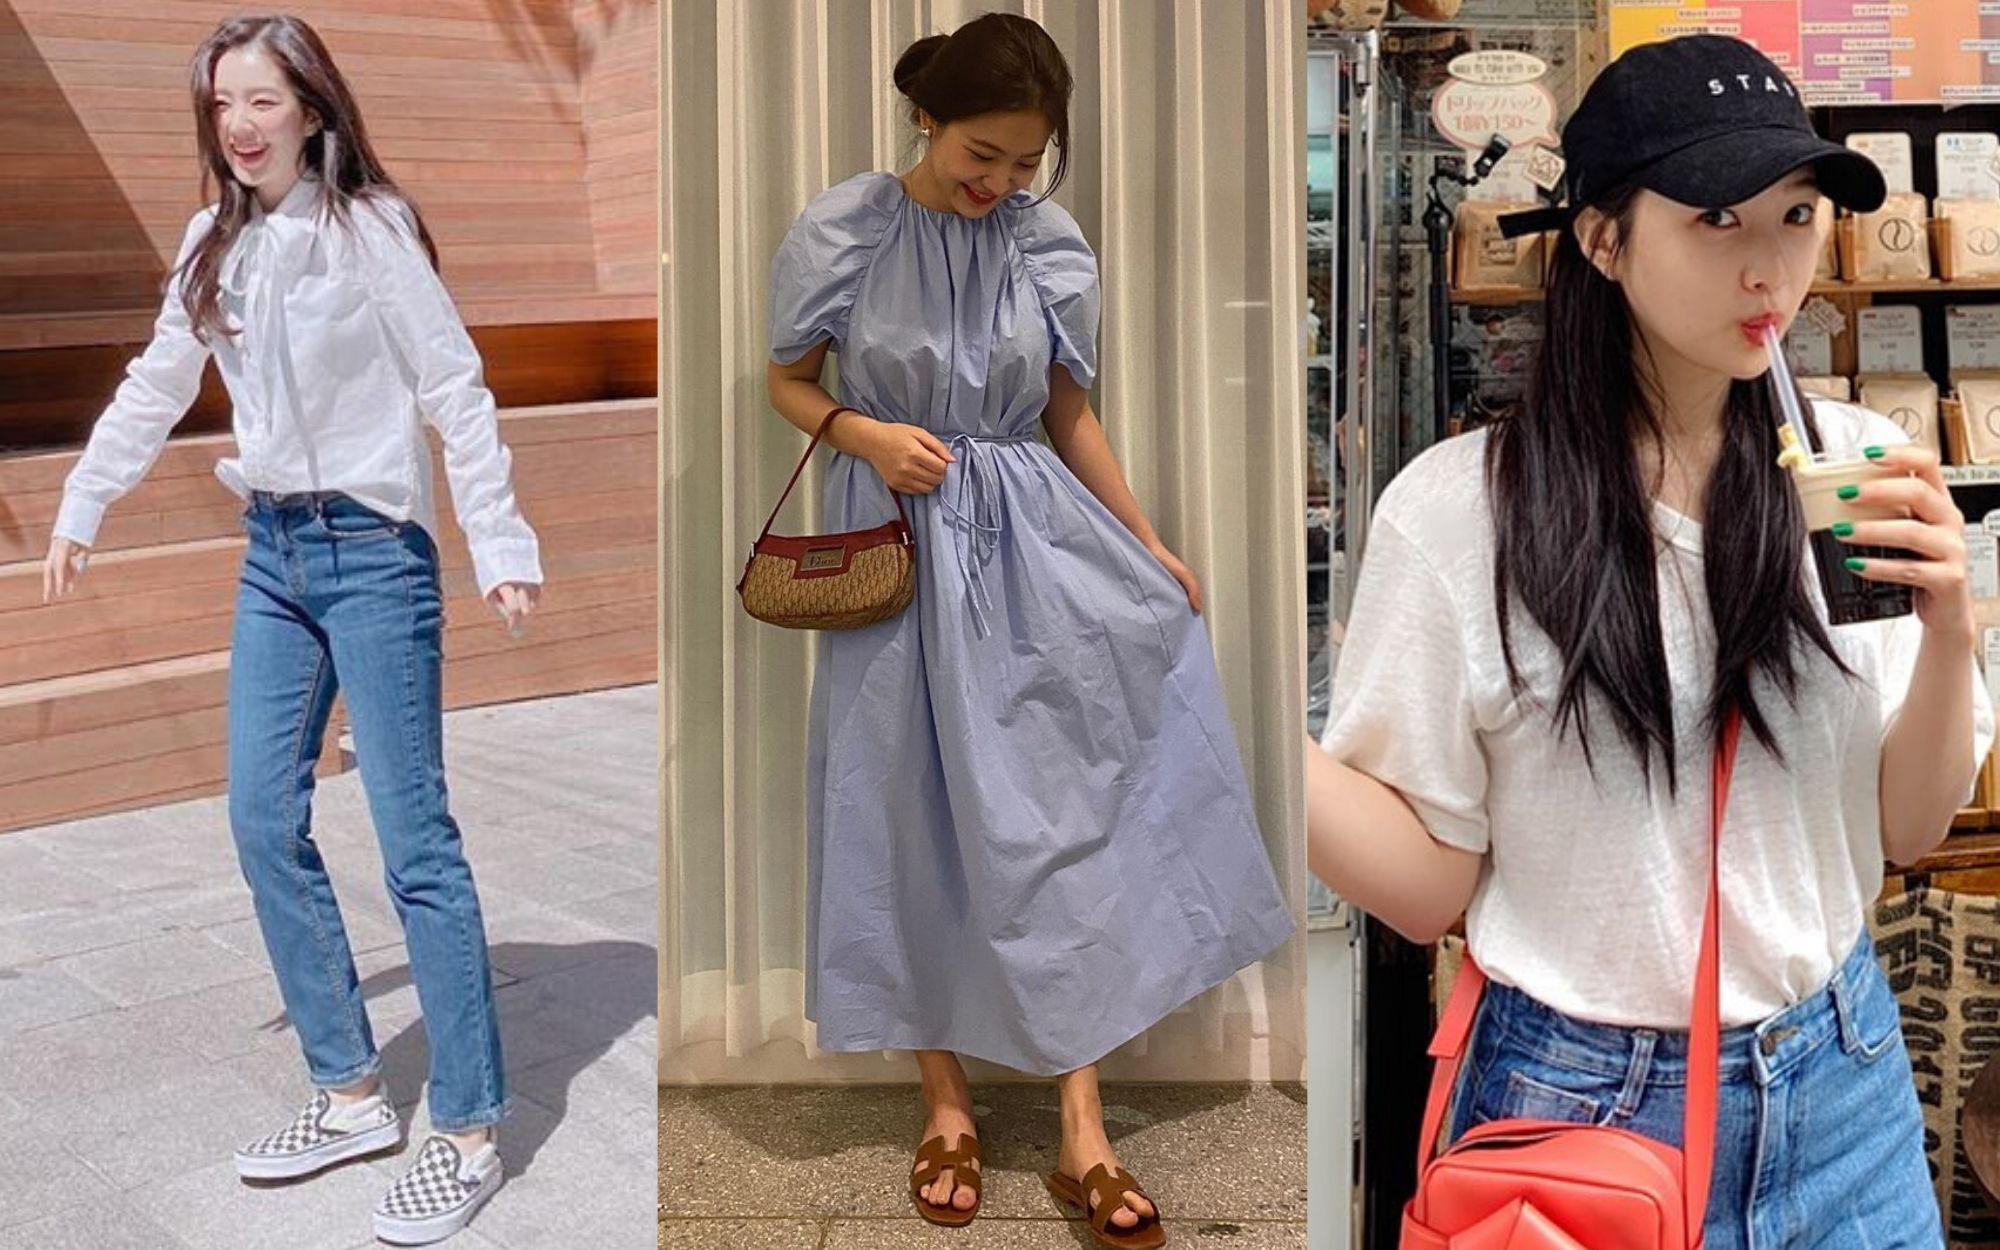 Ăn diện thời trang như Red Velvet tưởng khó mà dễ bất ngờ, chị em chỉ cần sắm 5 items ai mặc cũng đẹp này thôi